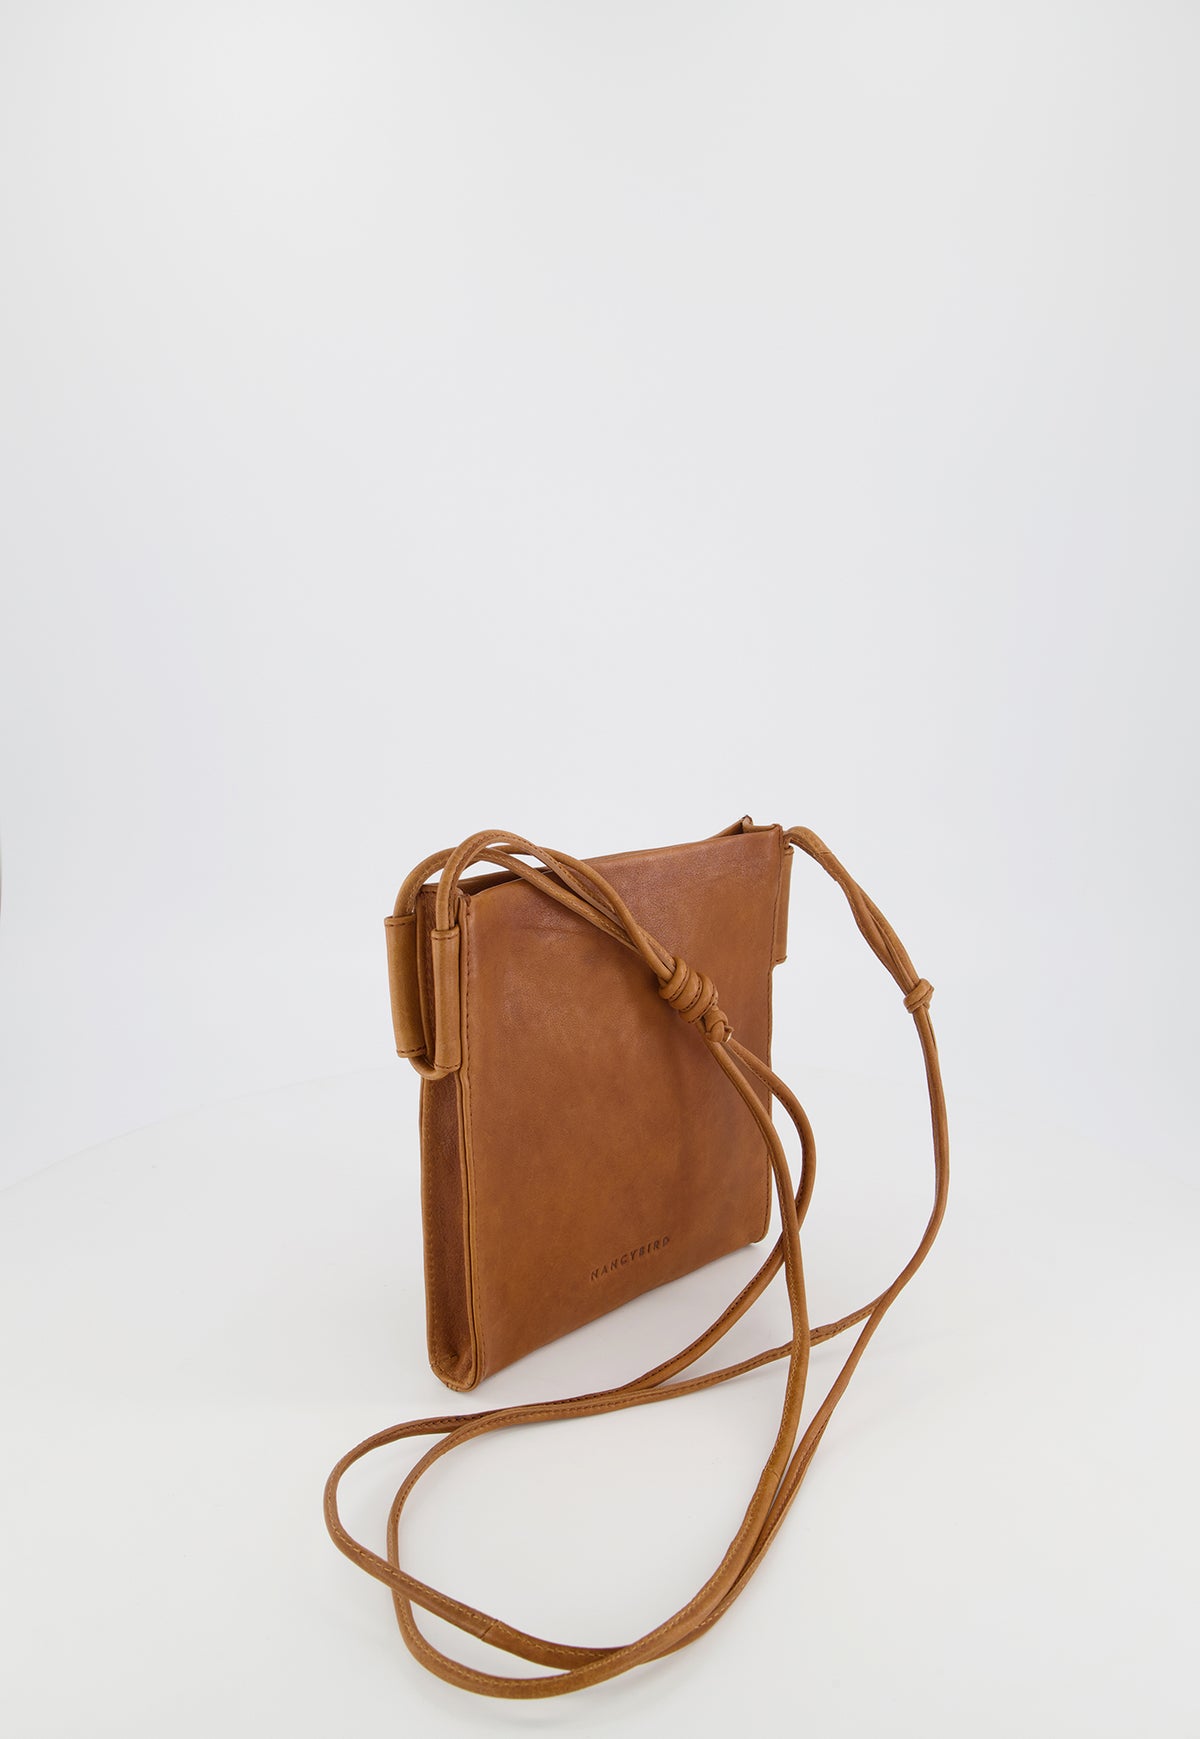 Target Faux Leather Handbags | Mercari